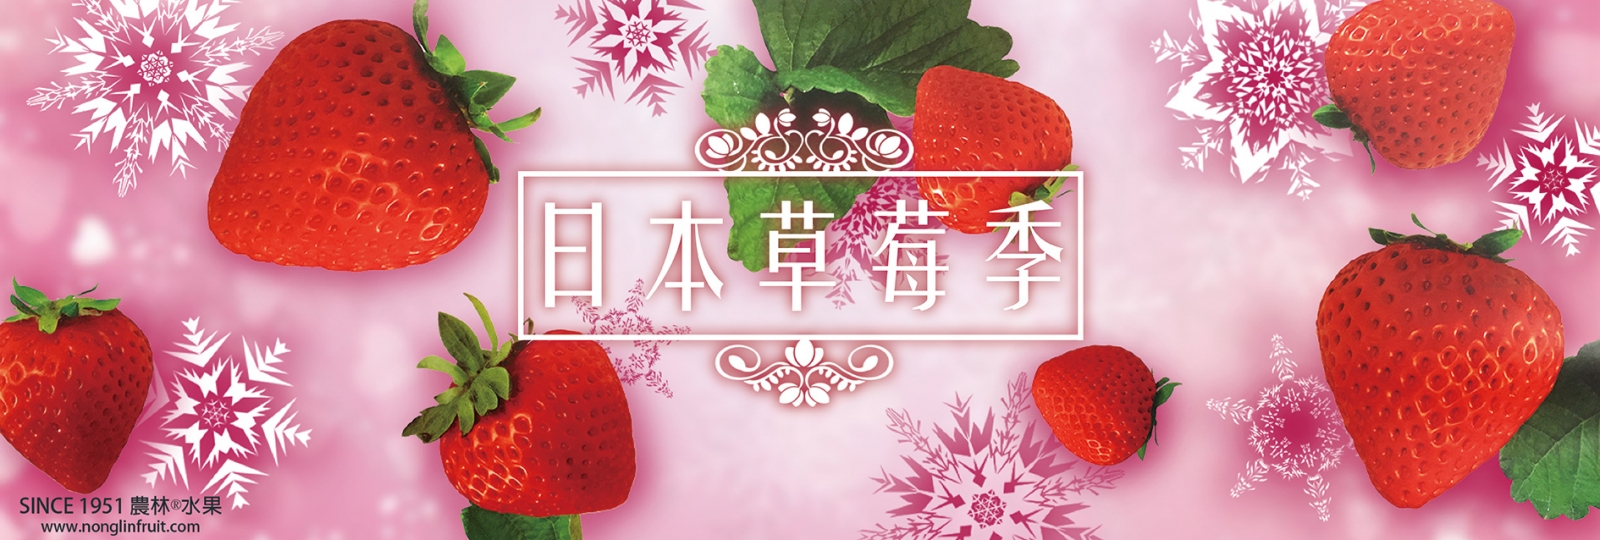 冬天日本福岡德島奈良日本草莓季-原